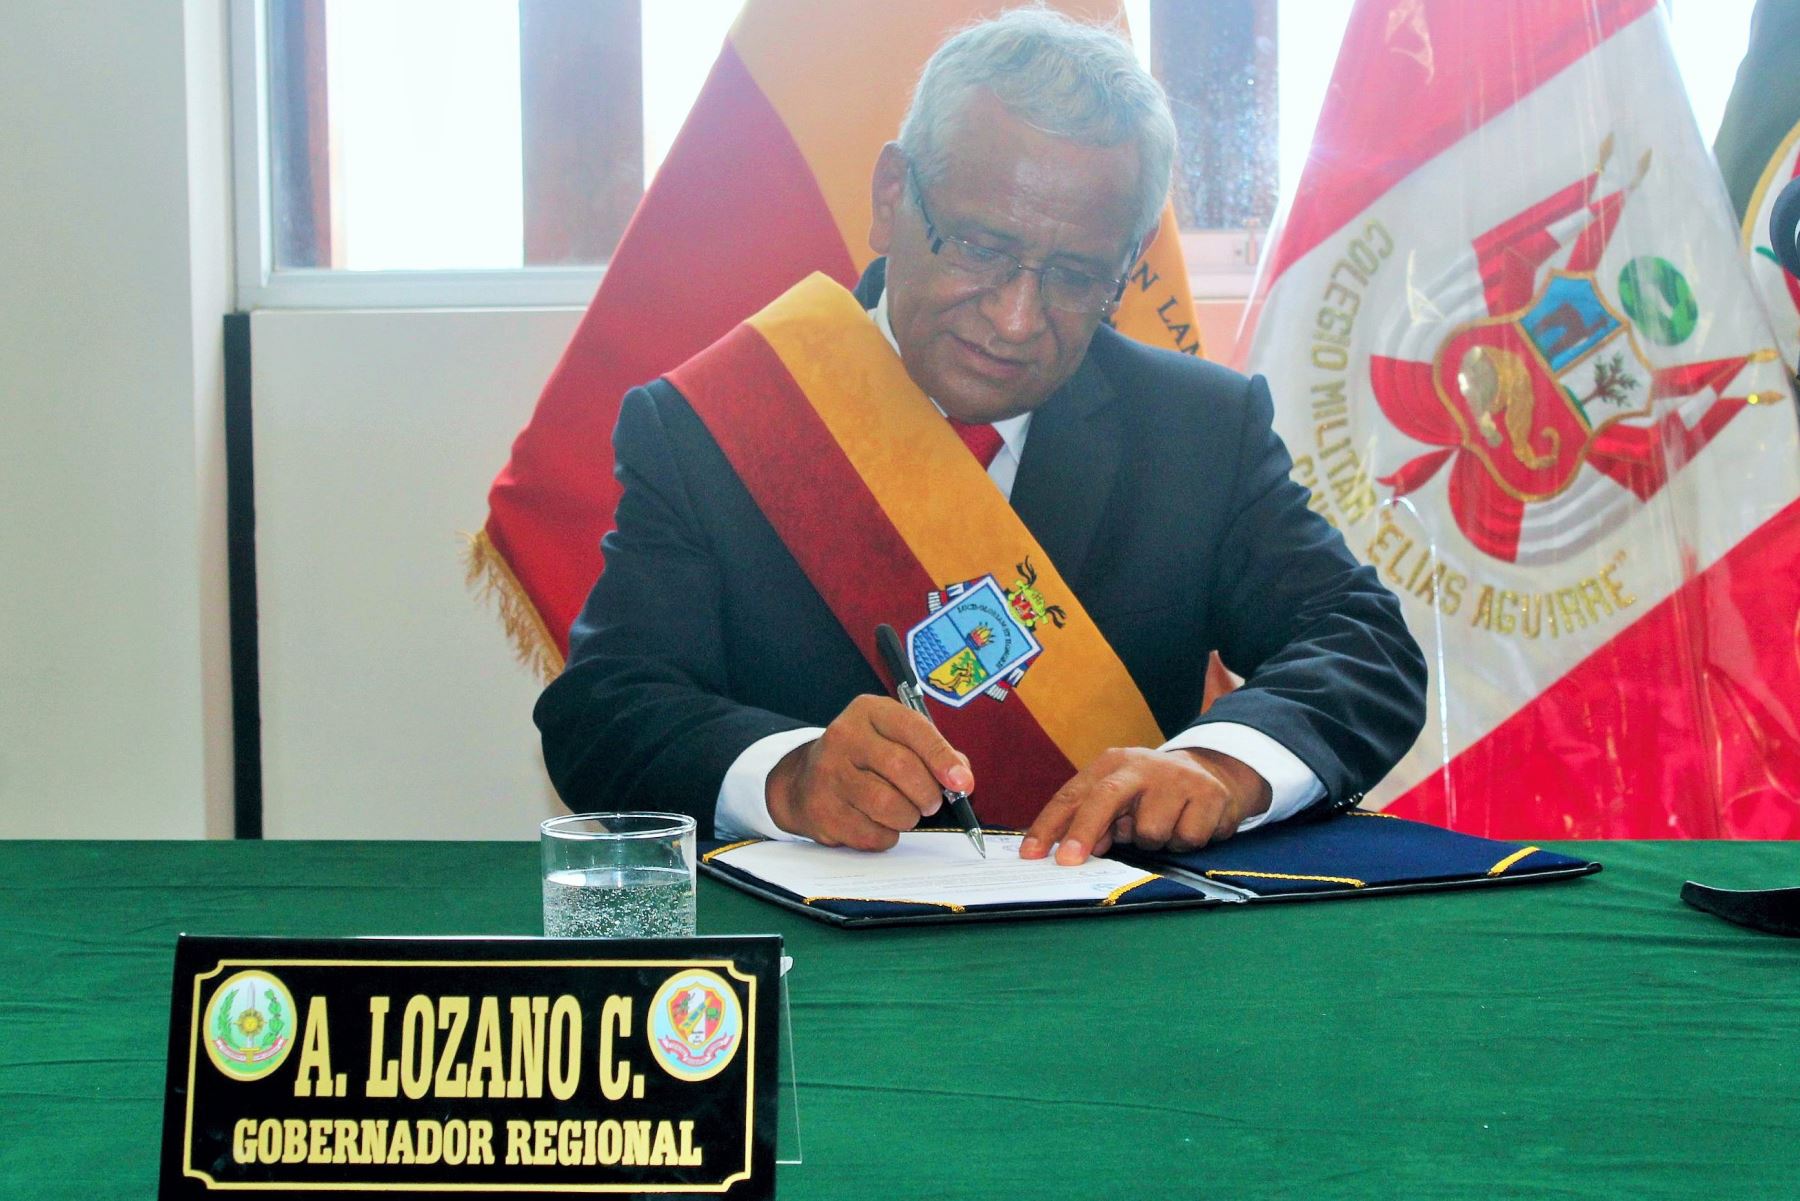 El gobernador regional de Lambayeque, Anselmo Lozano, y 38 alcaldes de esta jurisdicción firmarán el Pacto por la Integridad el 27 de febrero.